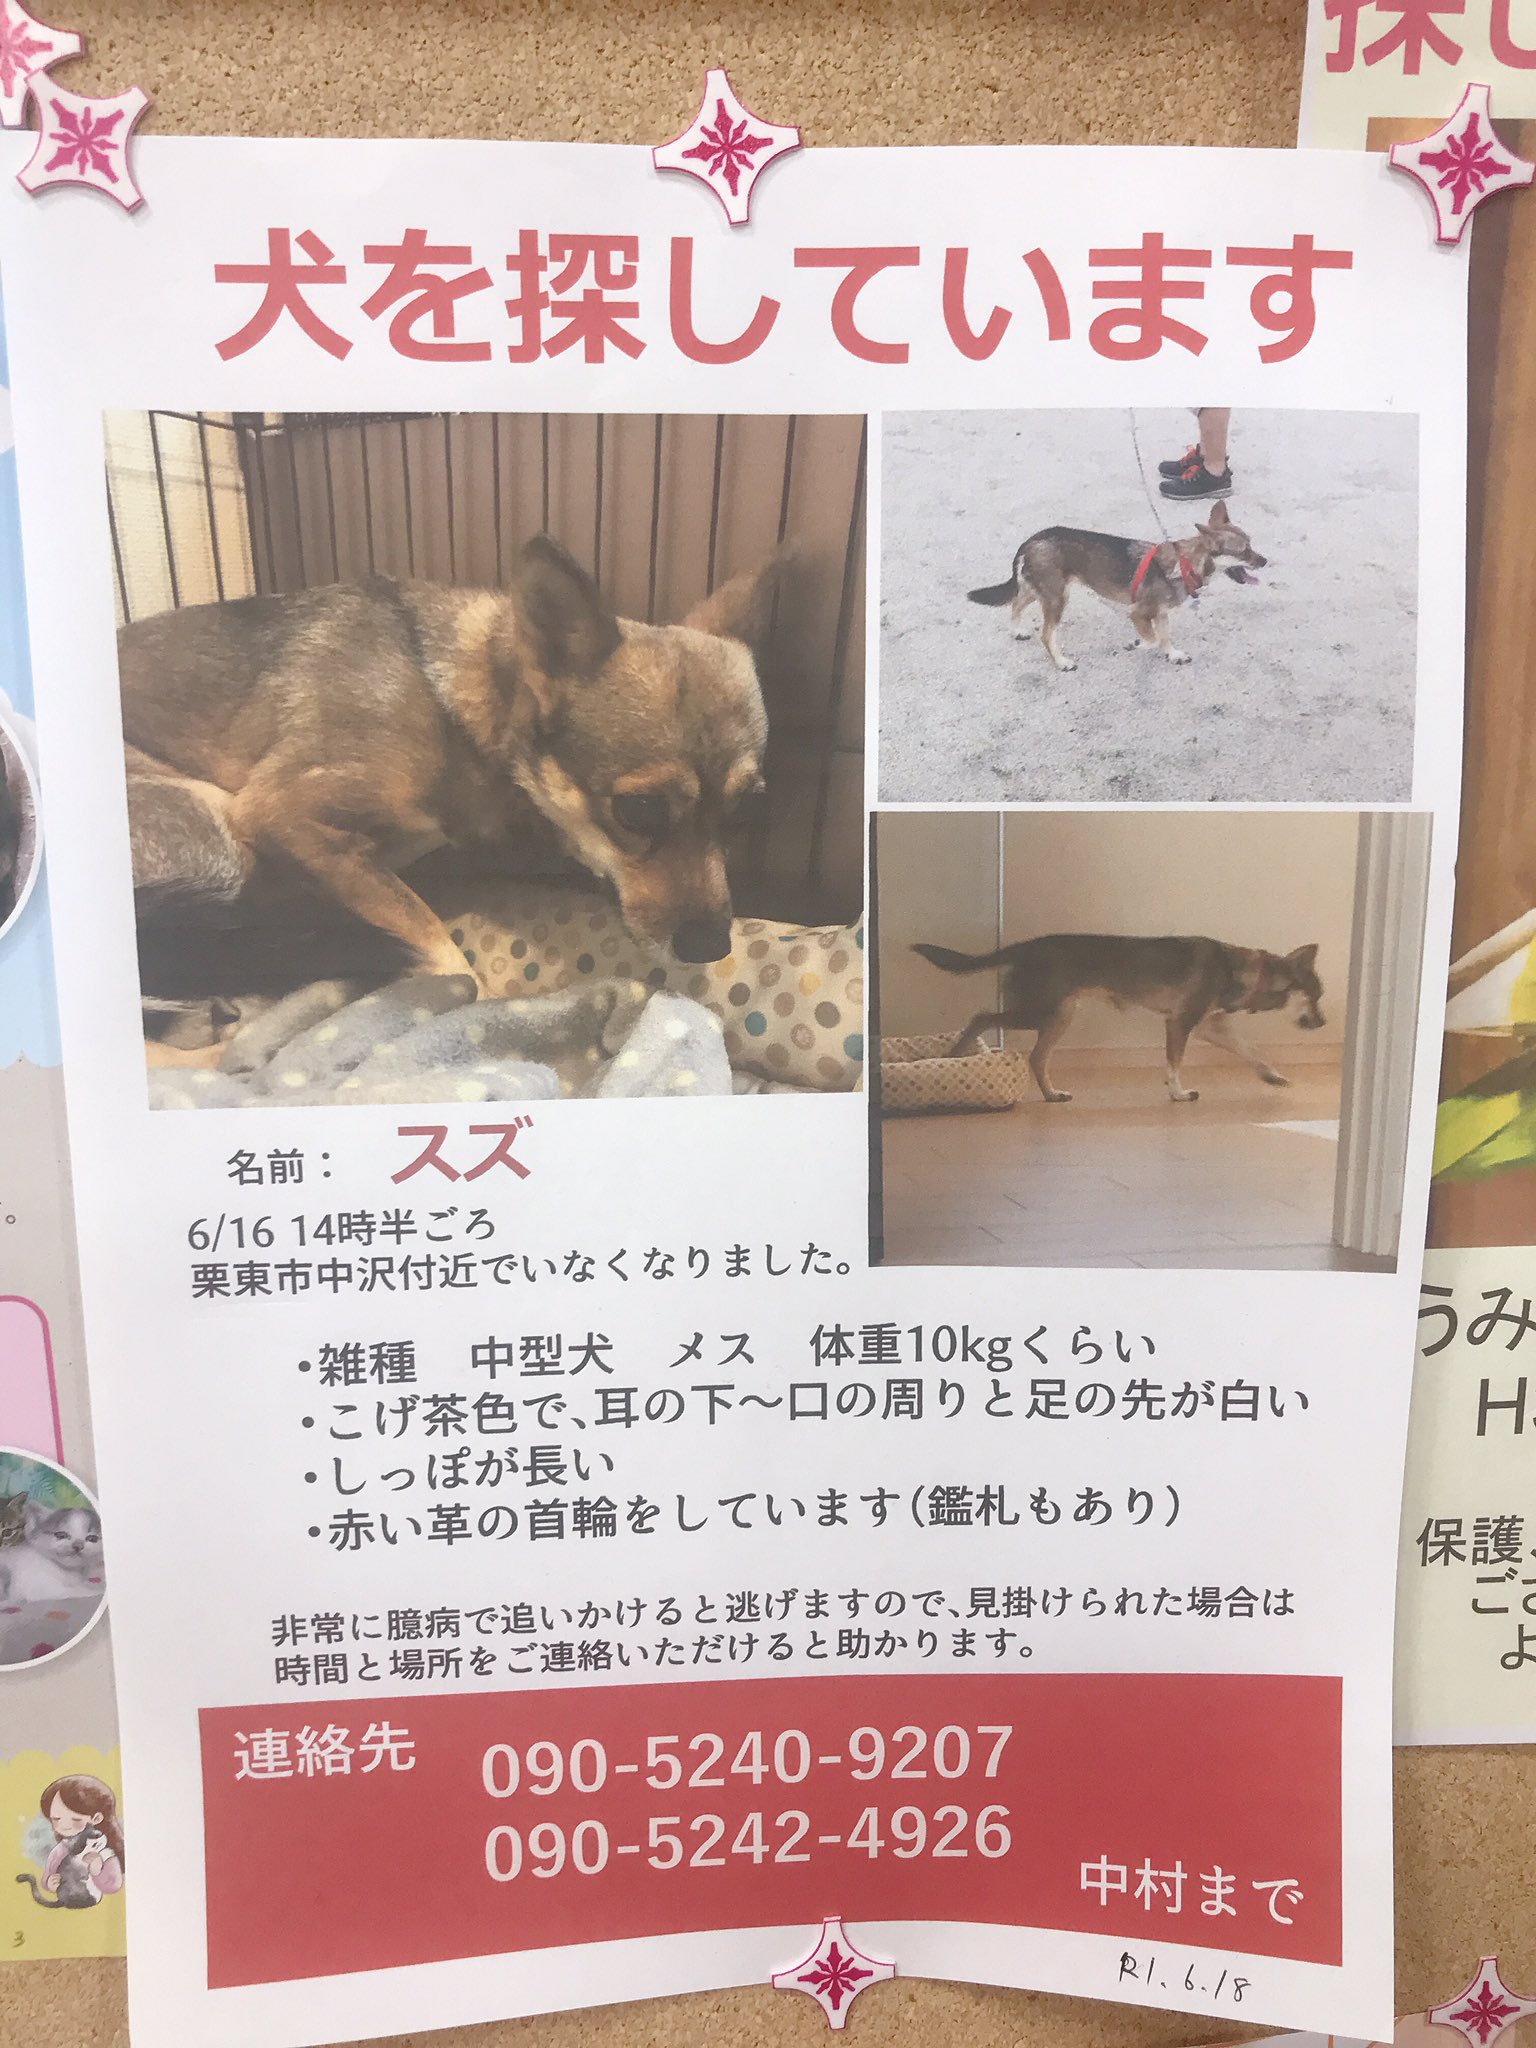 滋賀県 迷子猫探してます 滋賀県 栗東市 迷い犬 犬探してます アヤハディオに貼ってありました ご存知の方よろしくお願いいたします T Co Gdokcpqnfi Twitter